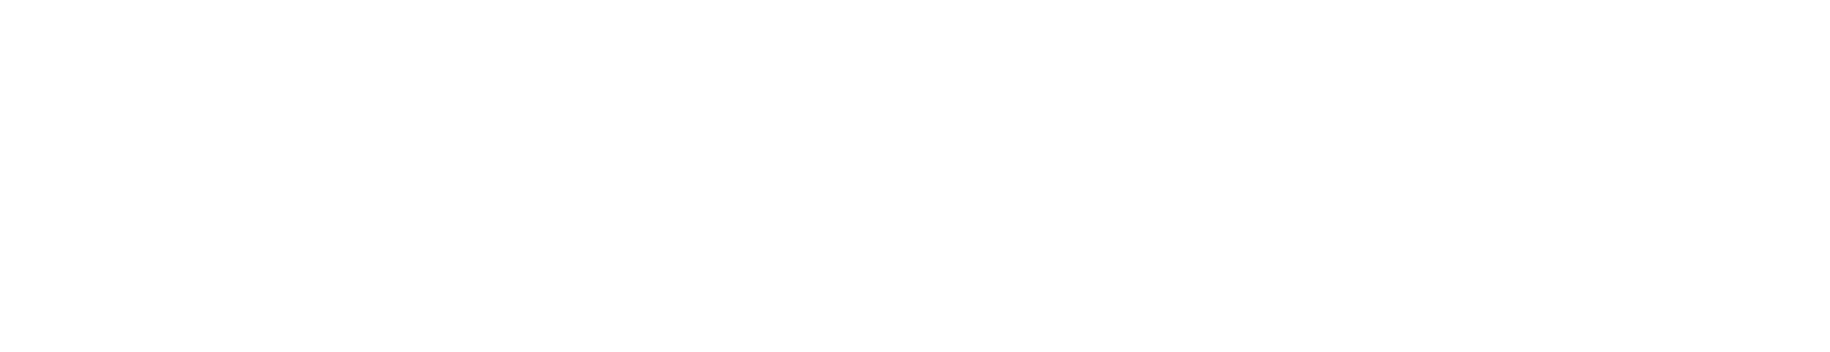 St. Jude Cloud logo